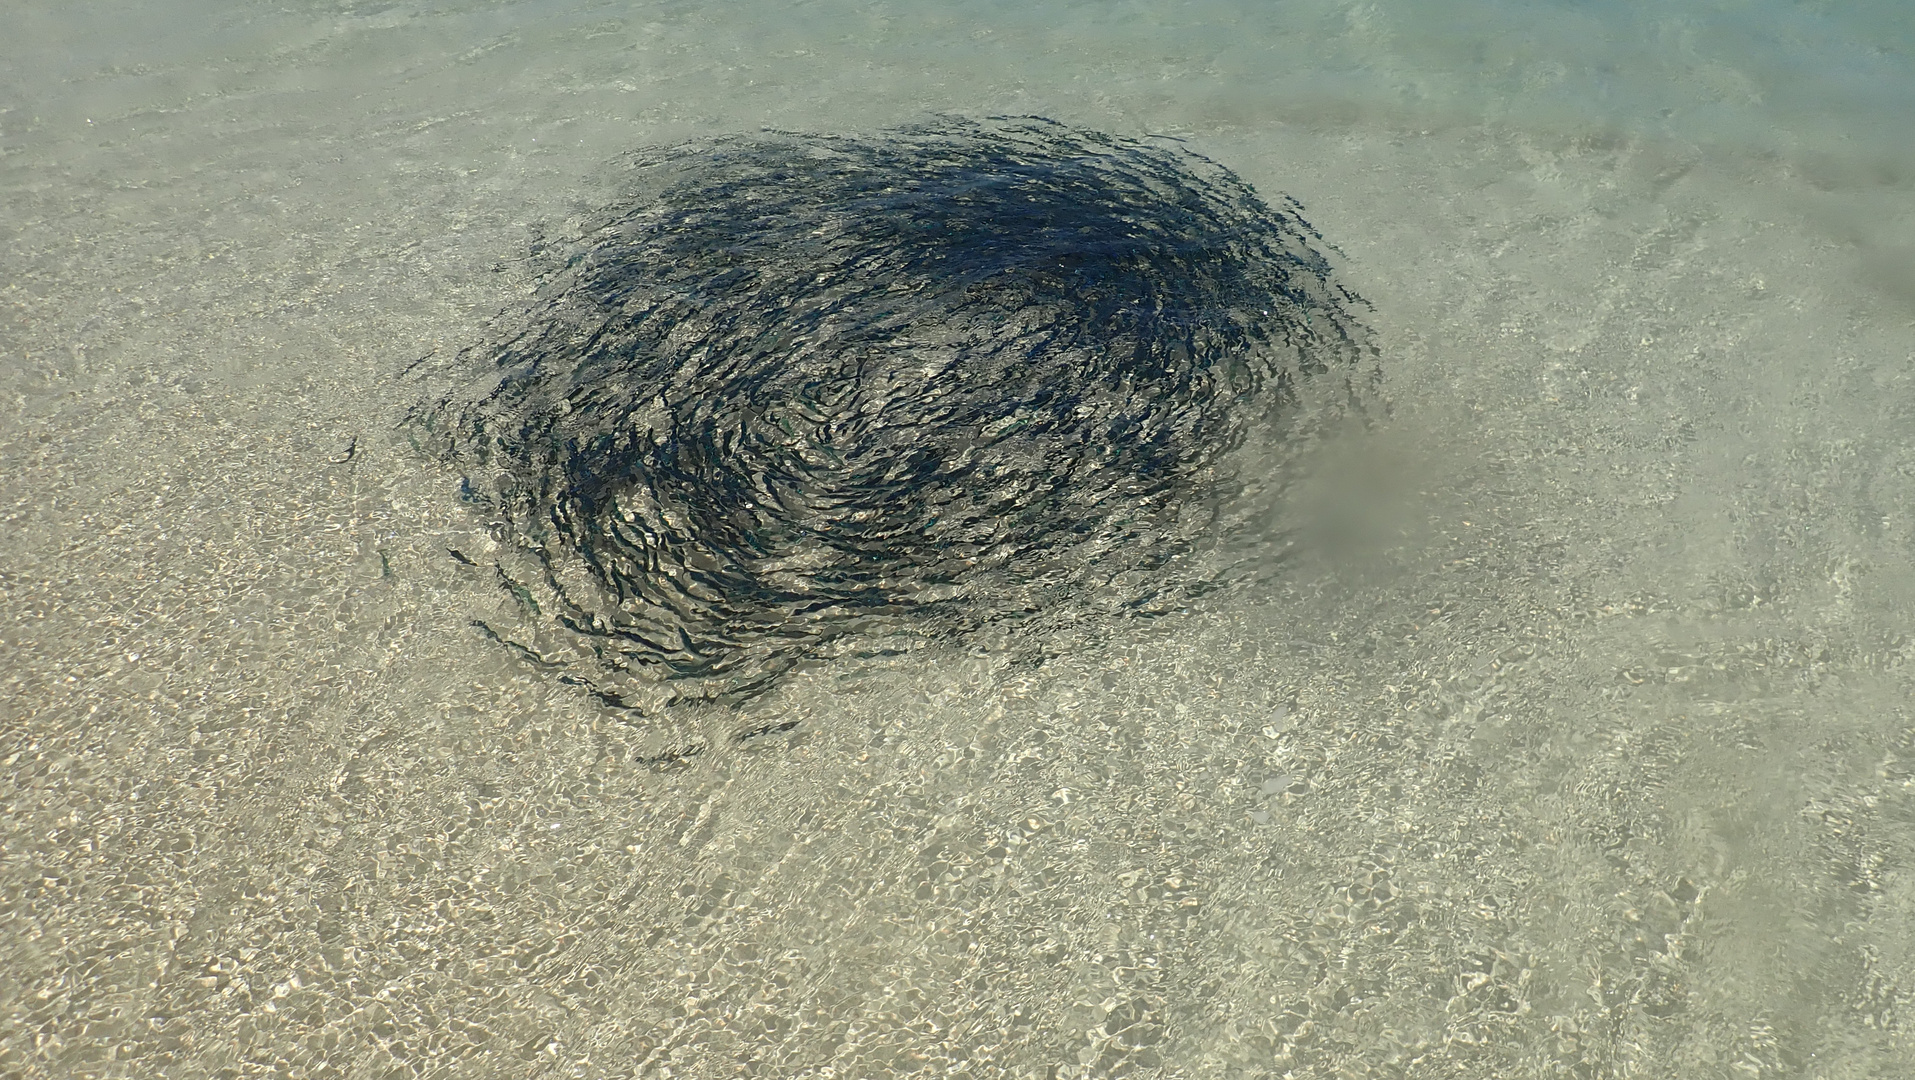 Makrelen in einer Kreisbewegung